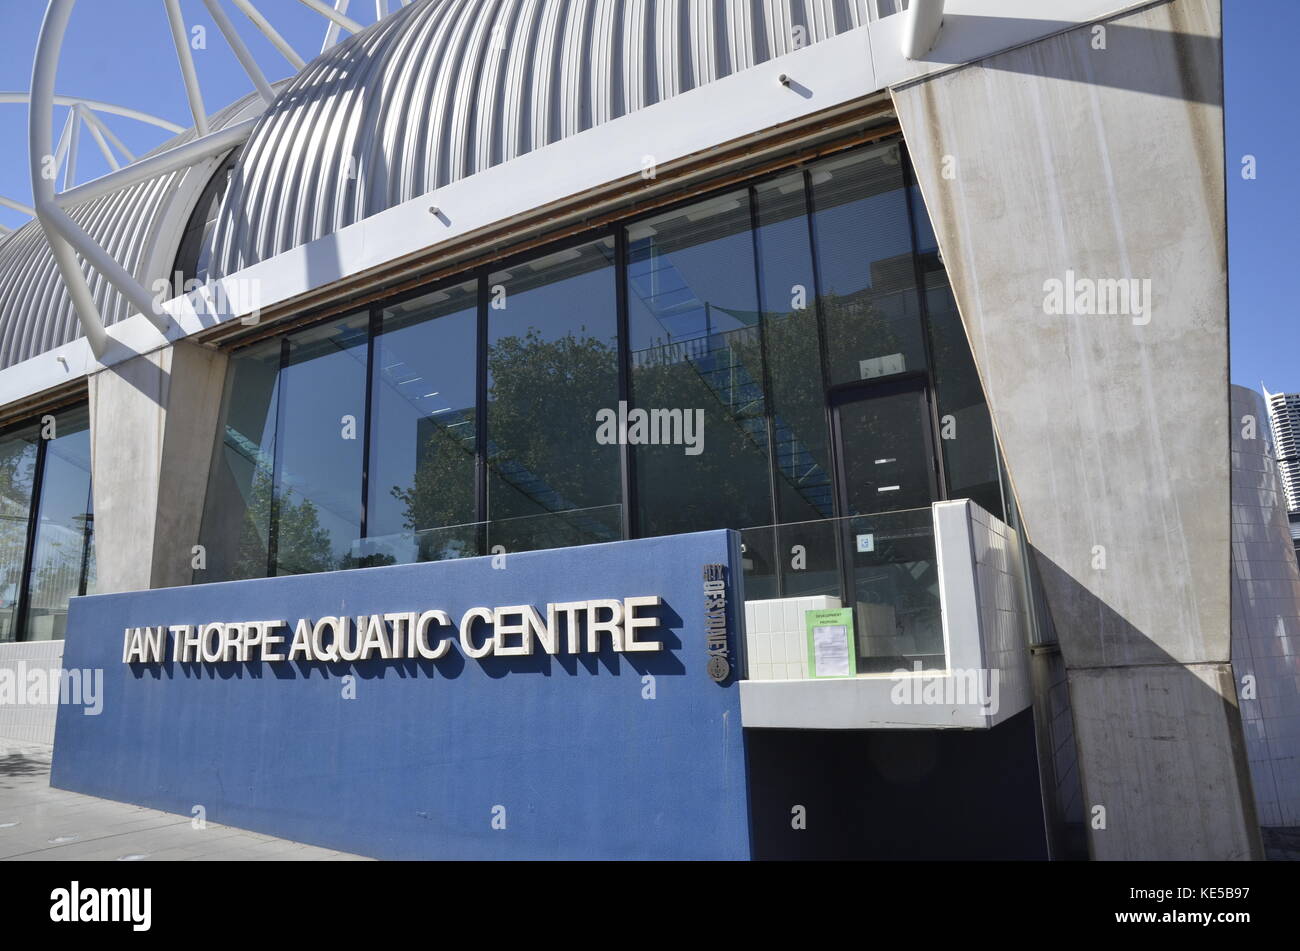 L'entrée de l'Ian Thorpe aquatic centre de Sydney en Australie, nommé en l'honneur de la médaille d'or large nageur olympique. Banque D'Images